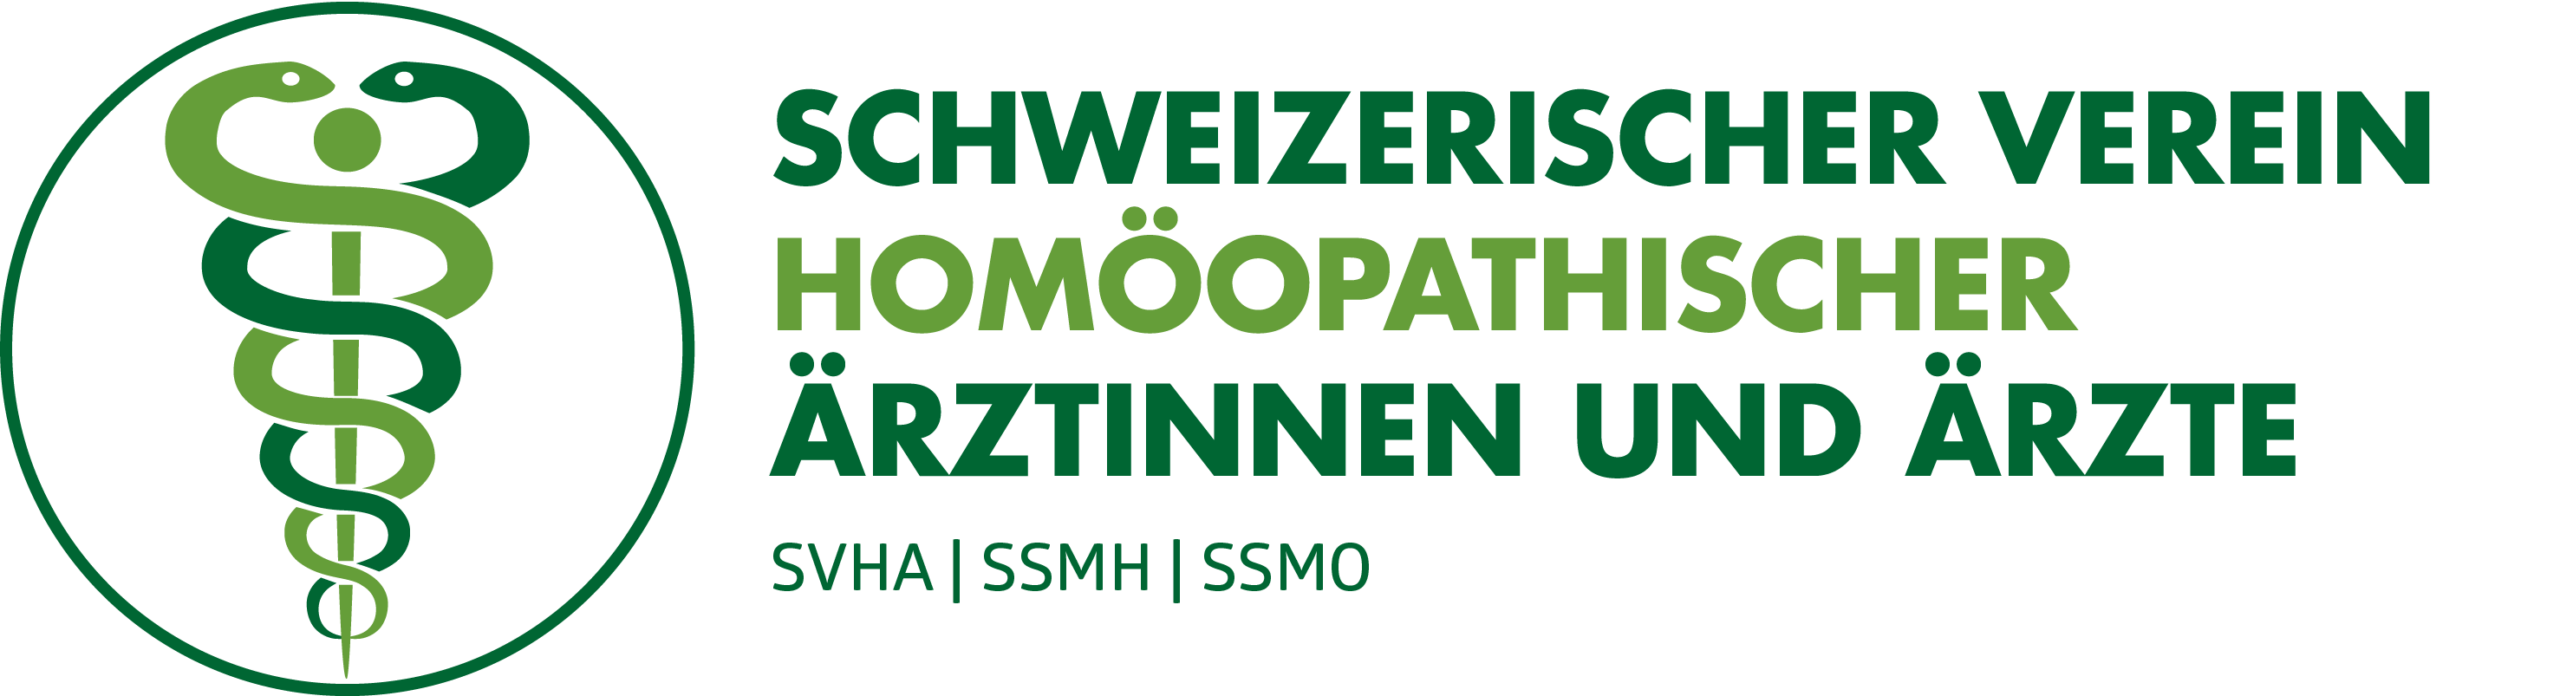 Schweizerischer Verein homöopathischer Ärztinnen und Ärzte (SVHA)